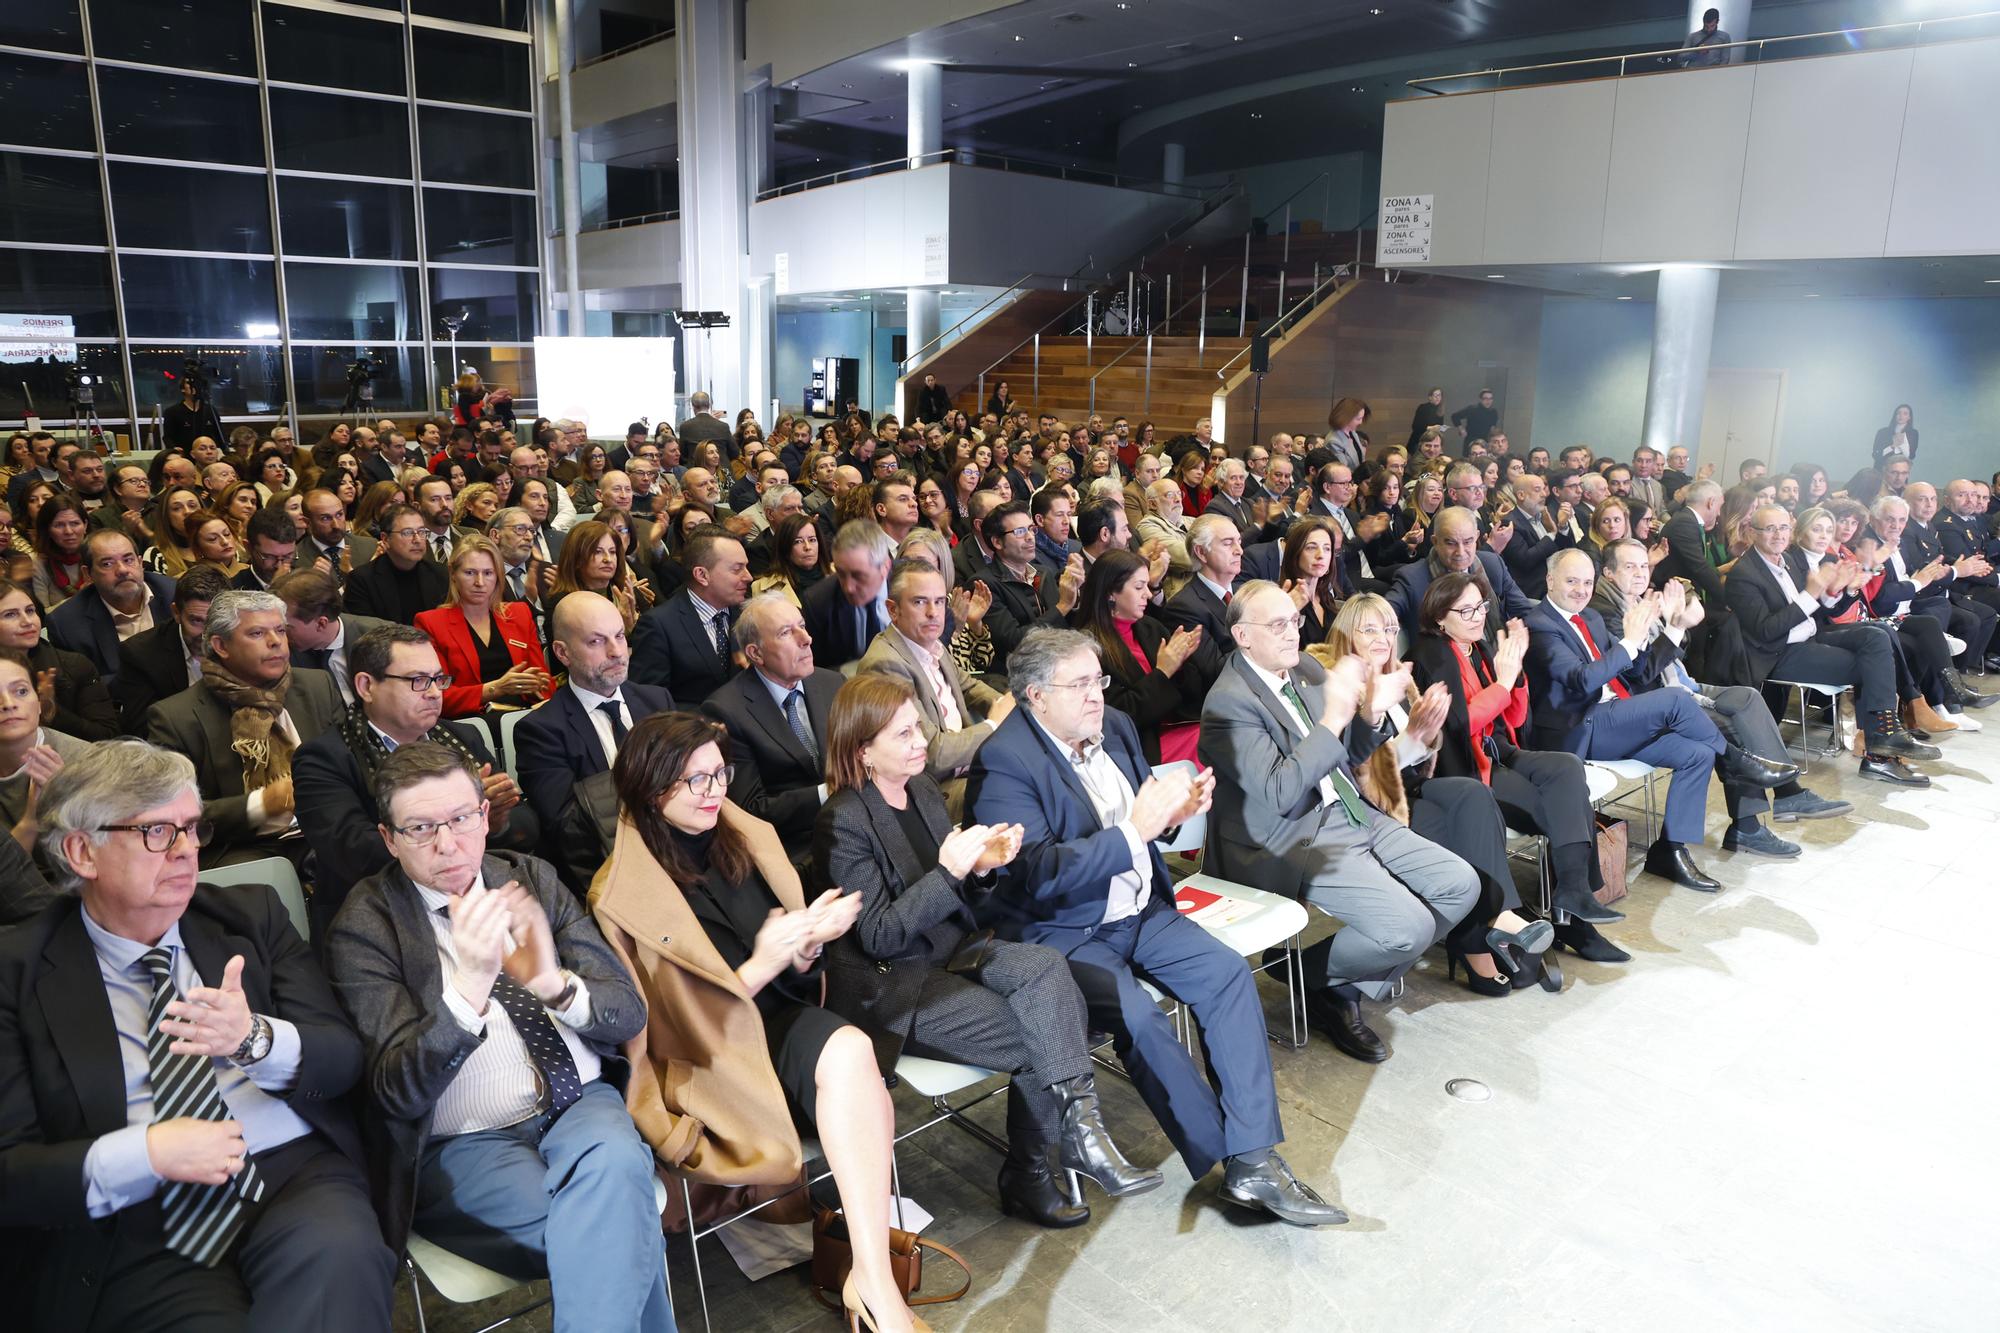 PREMIOS ARDÁN: La gala de la excelencia empresarial gallega, en imágenes